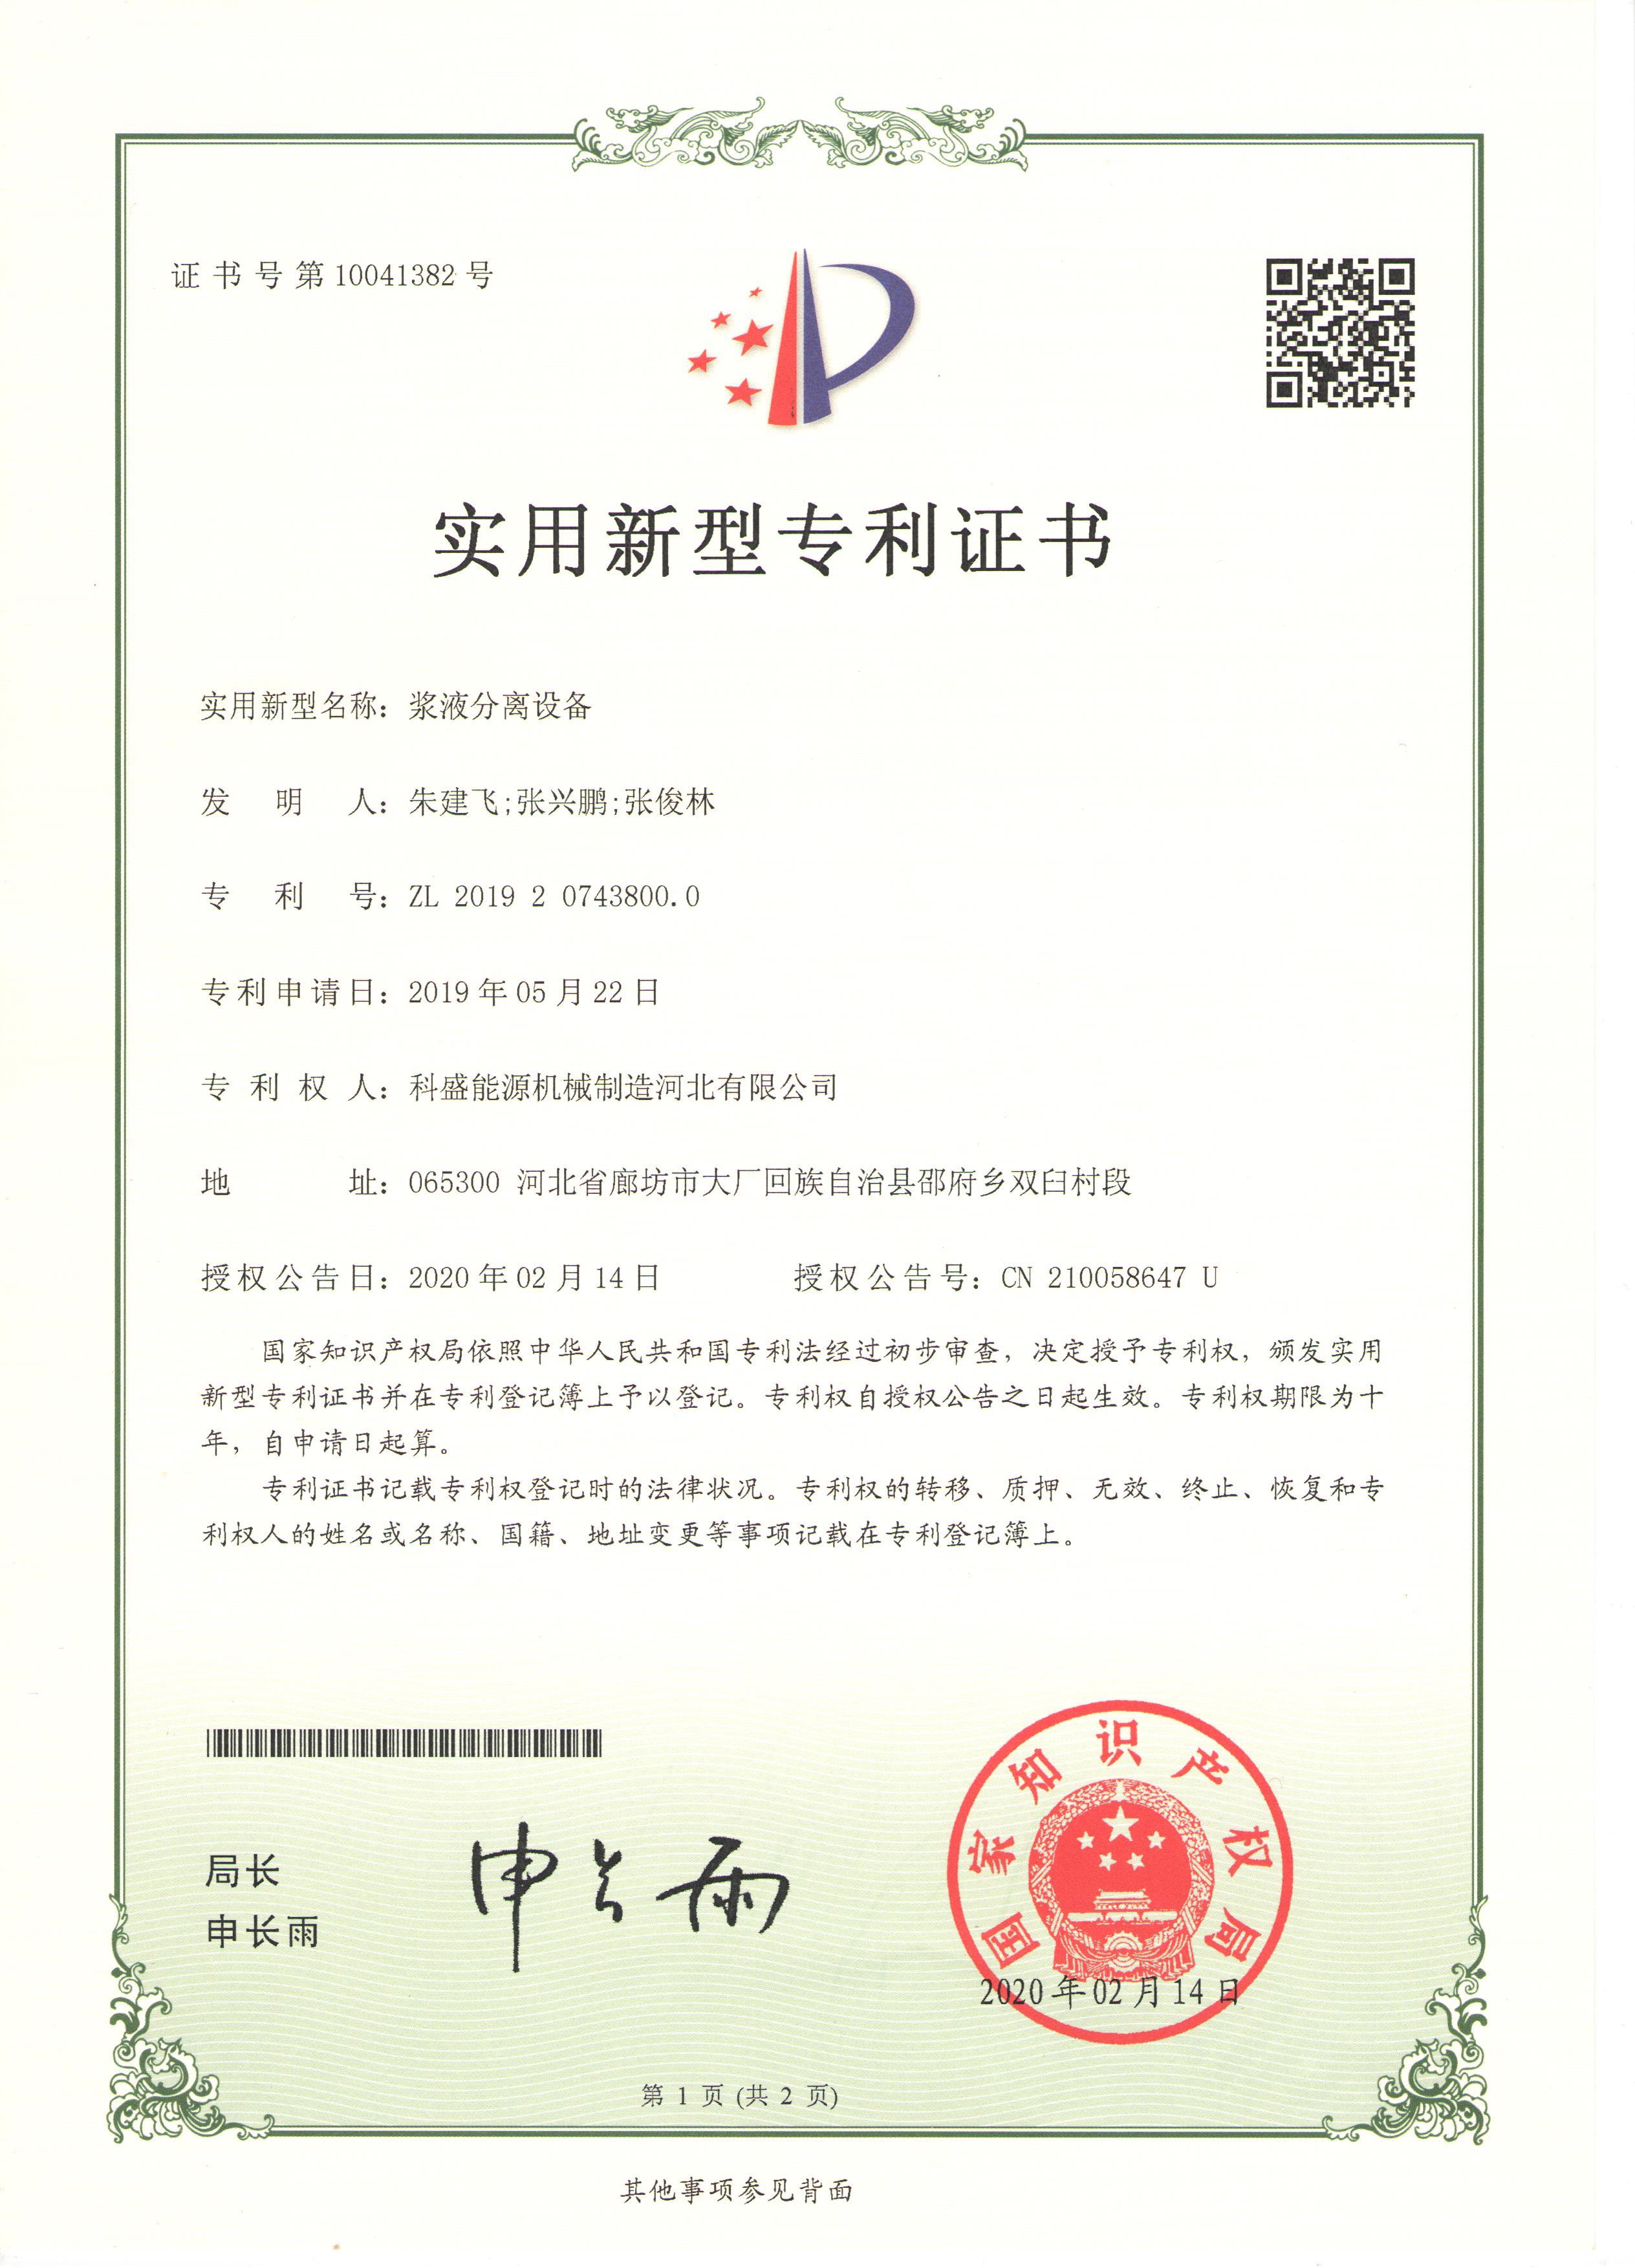 Slurry separation equipment - Patent certificate